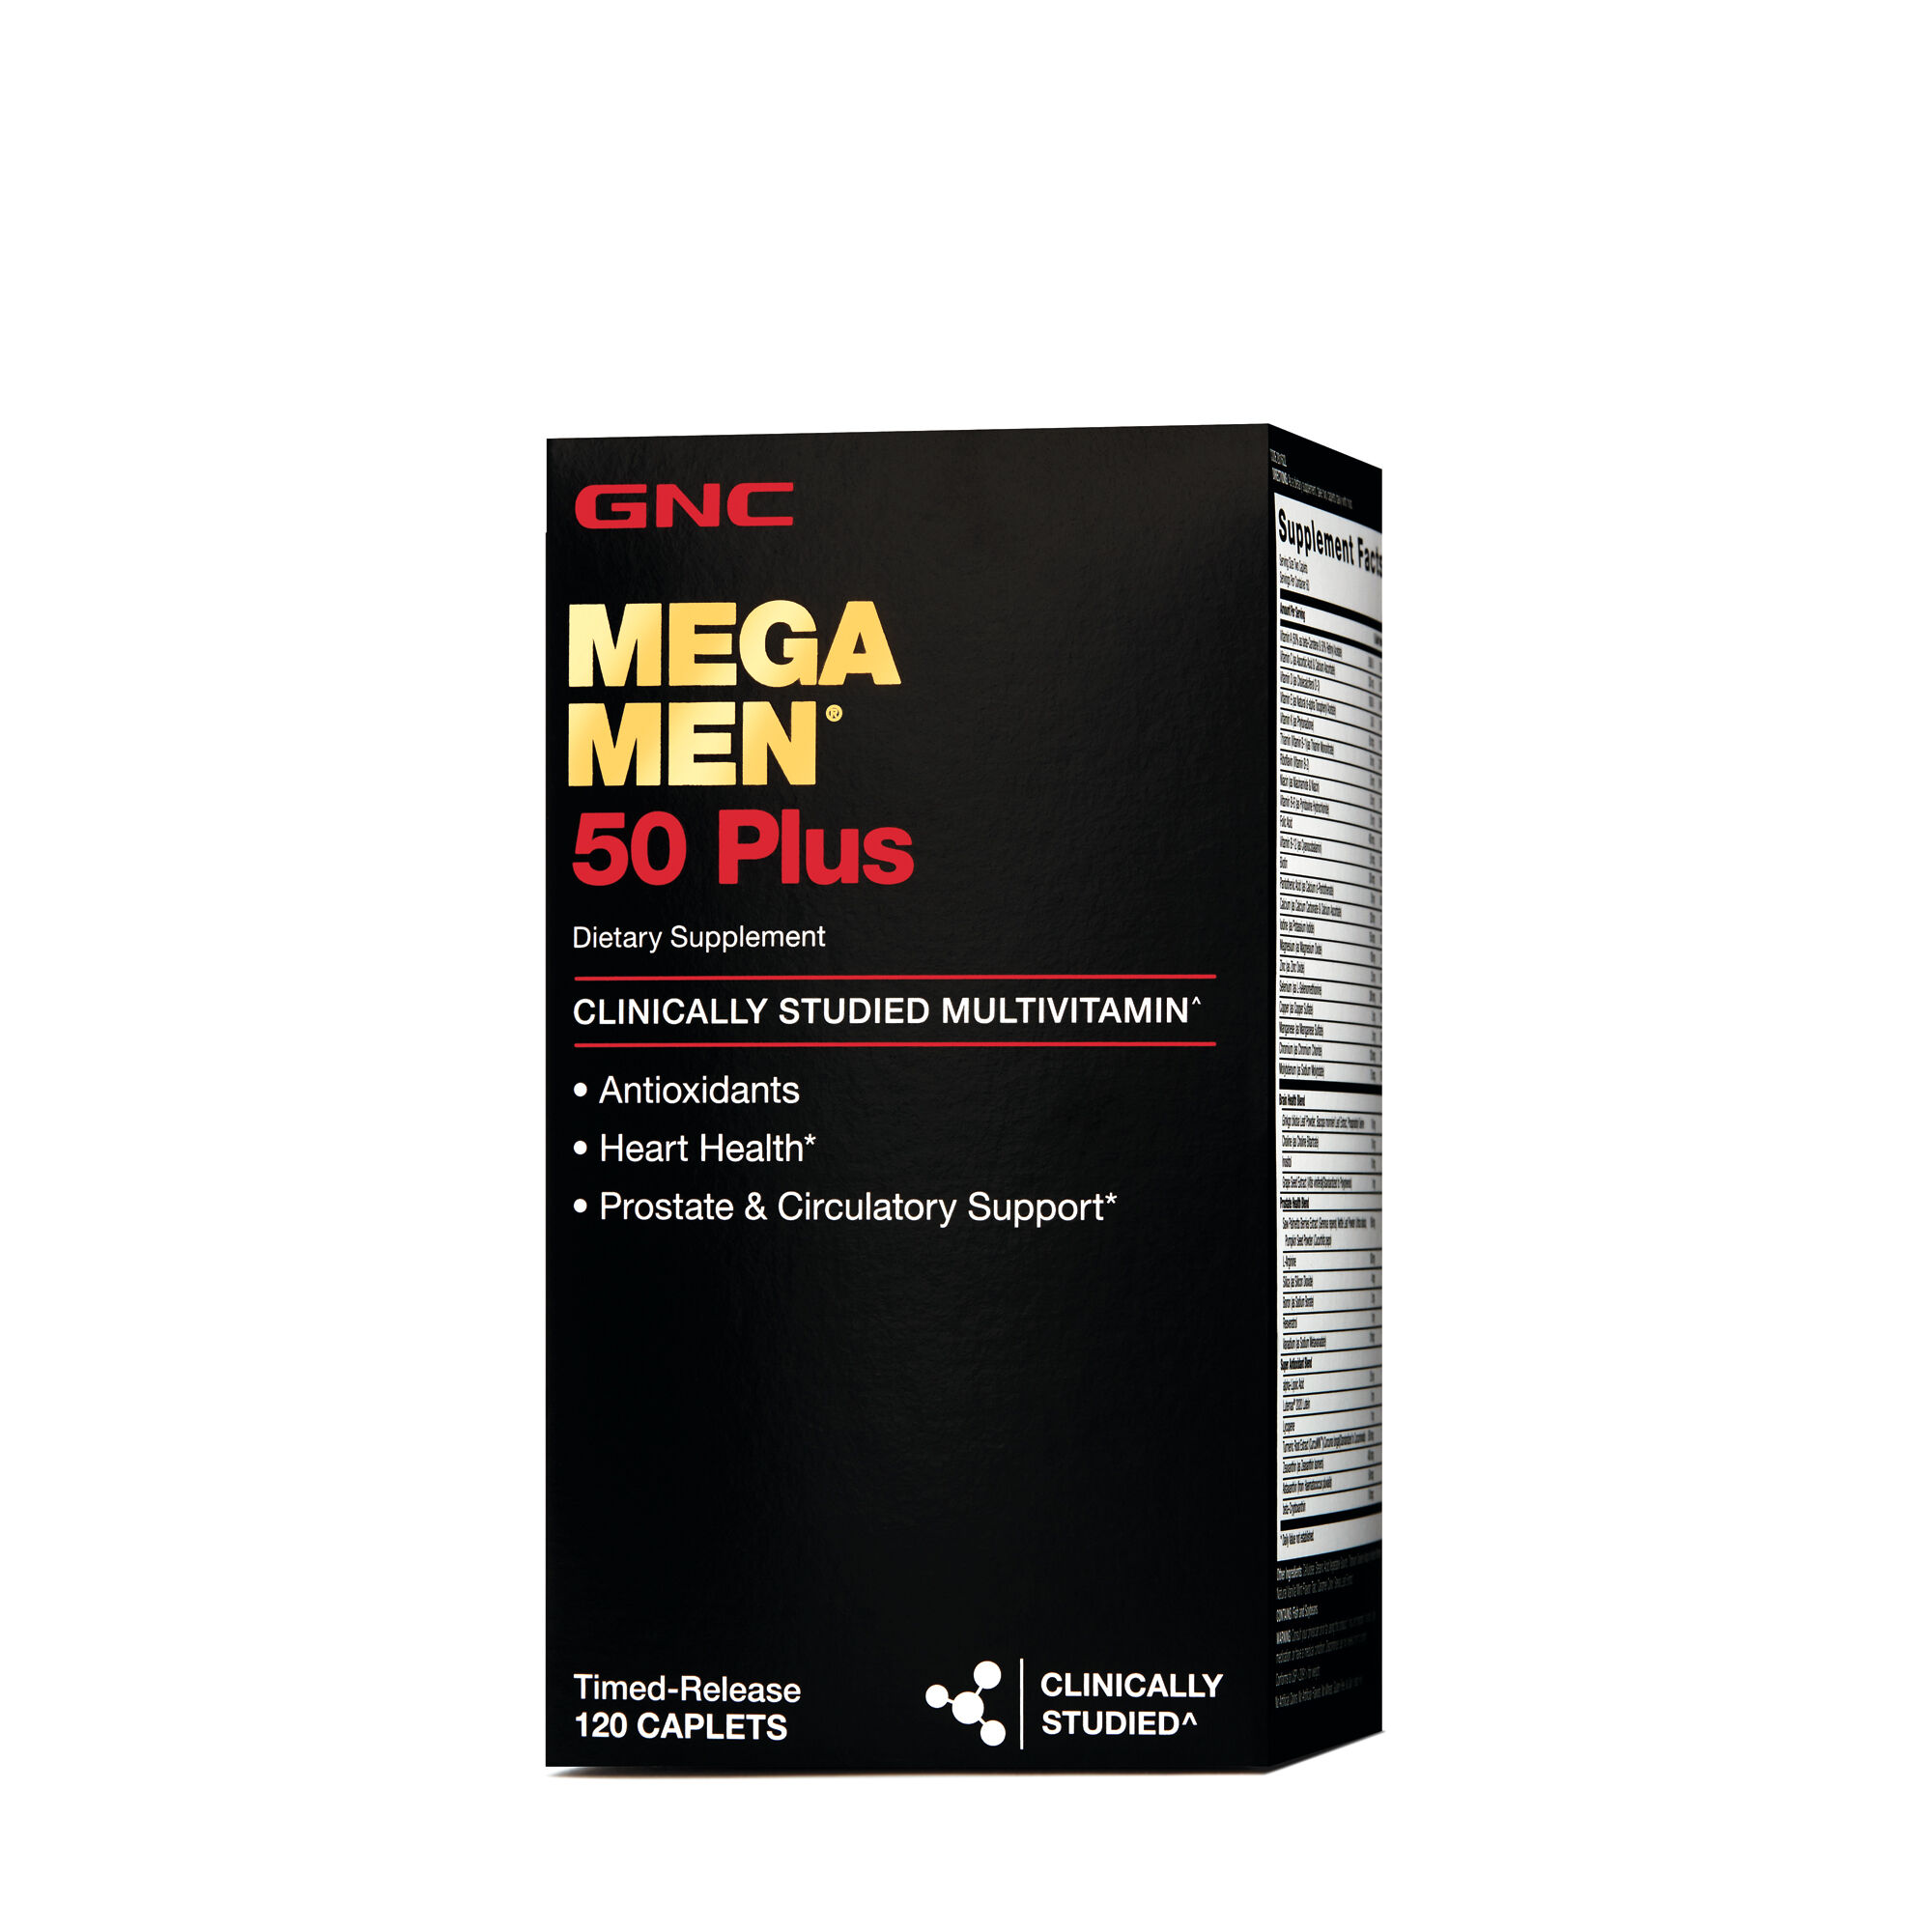 GNC Mega Men Multivitamin 50 Plus